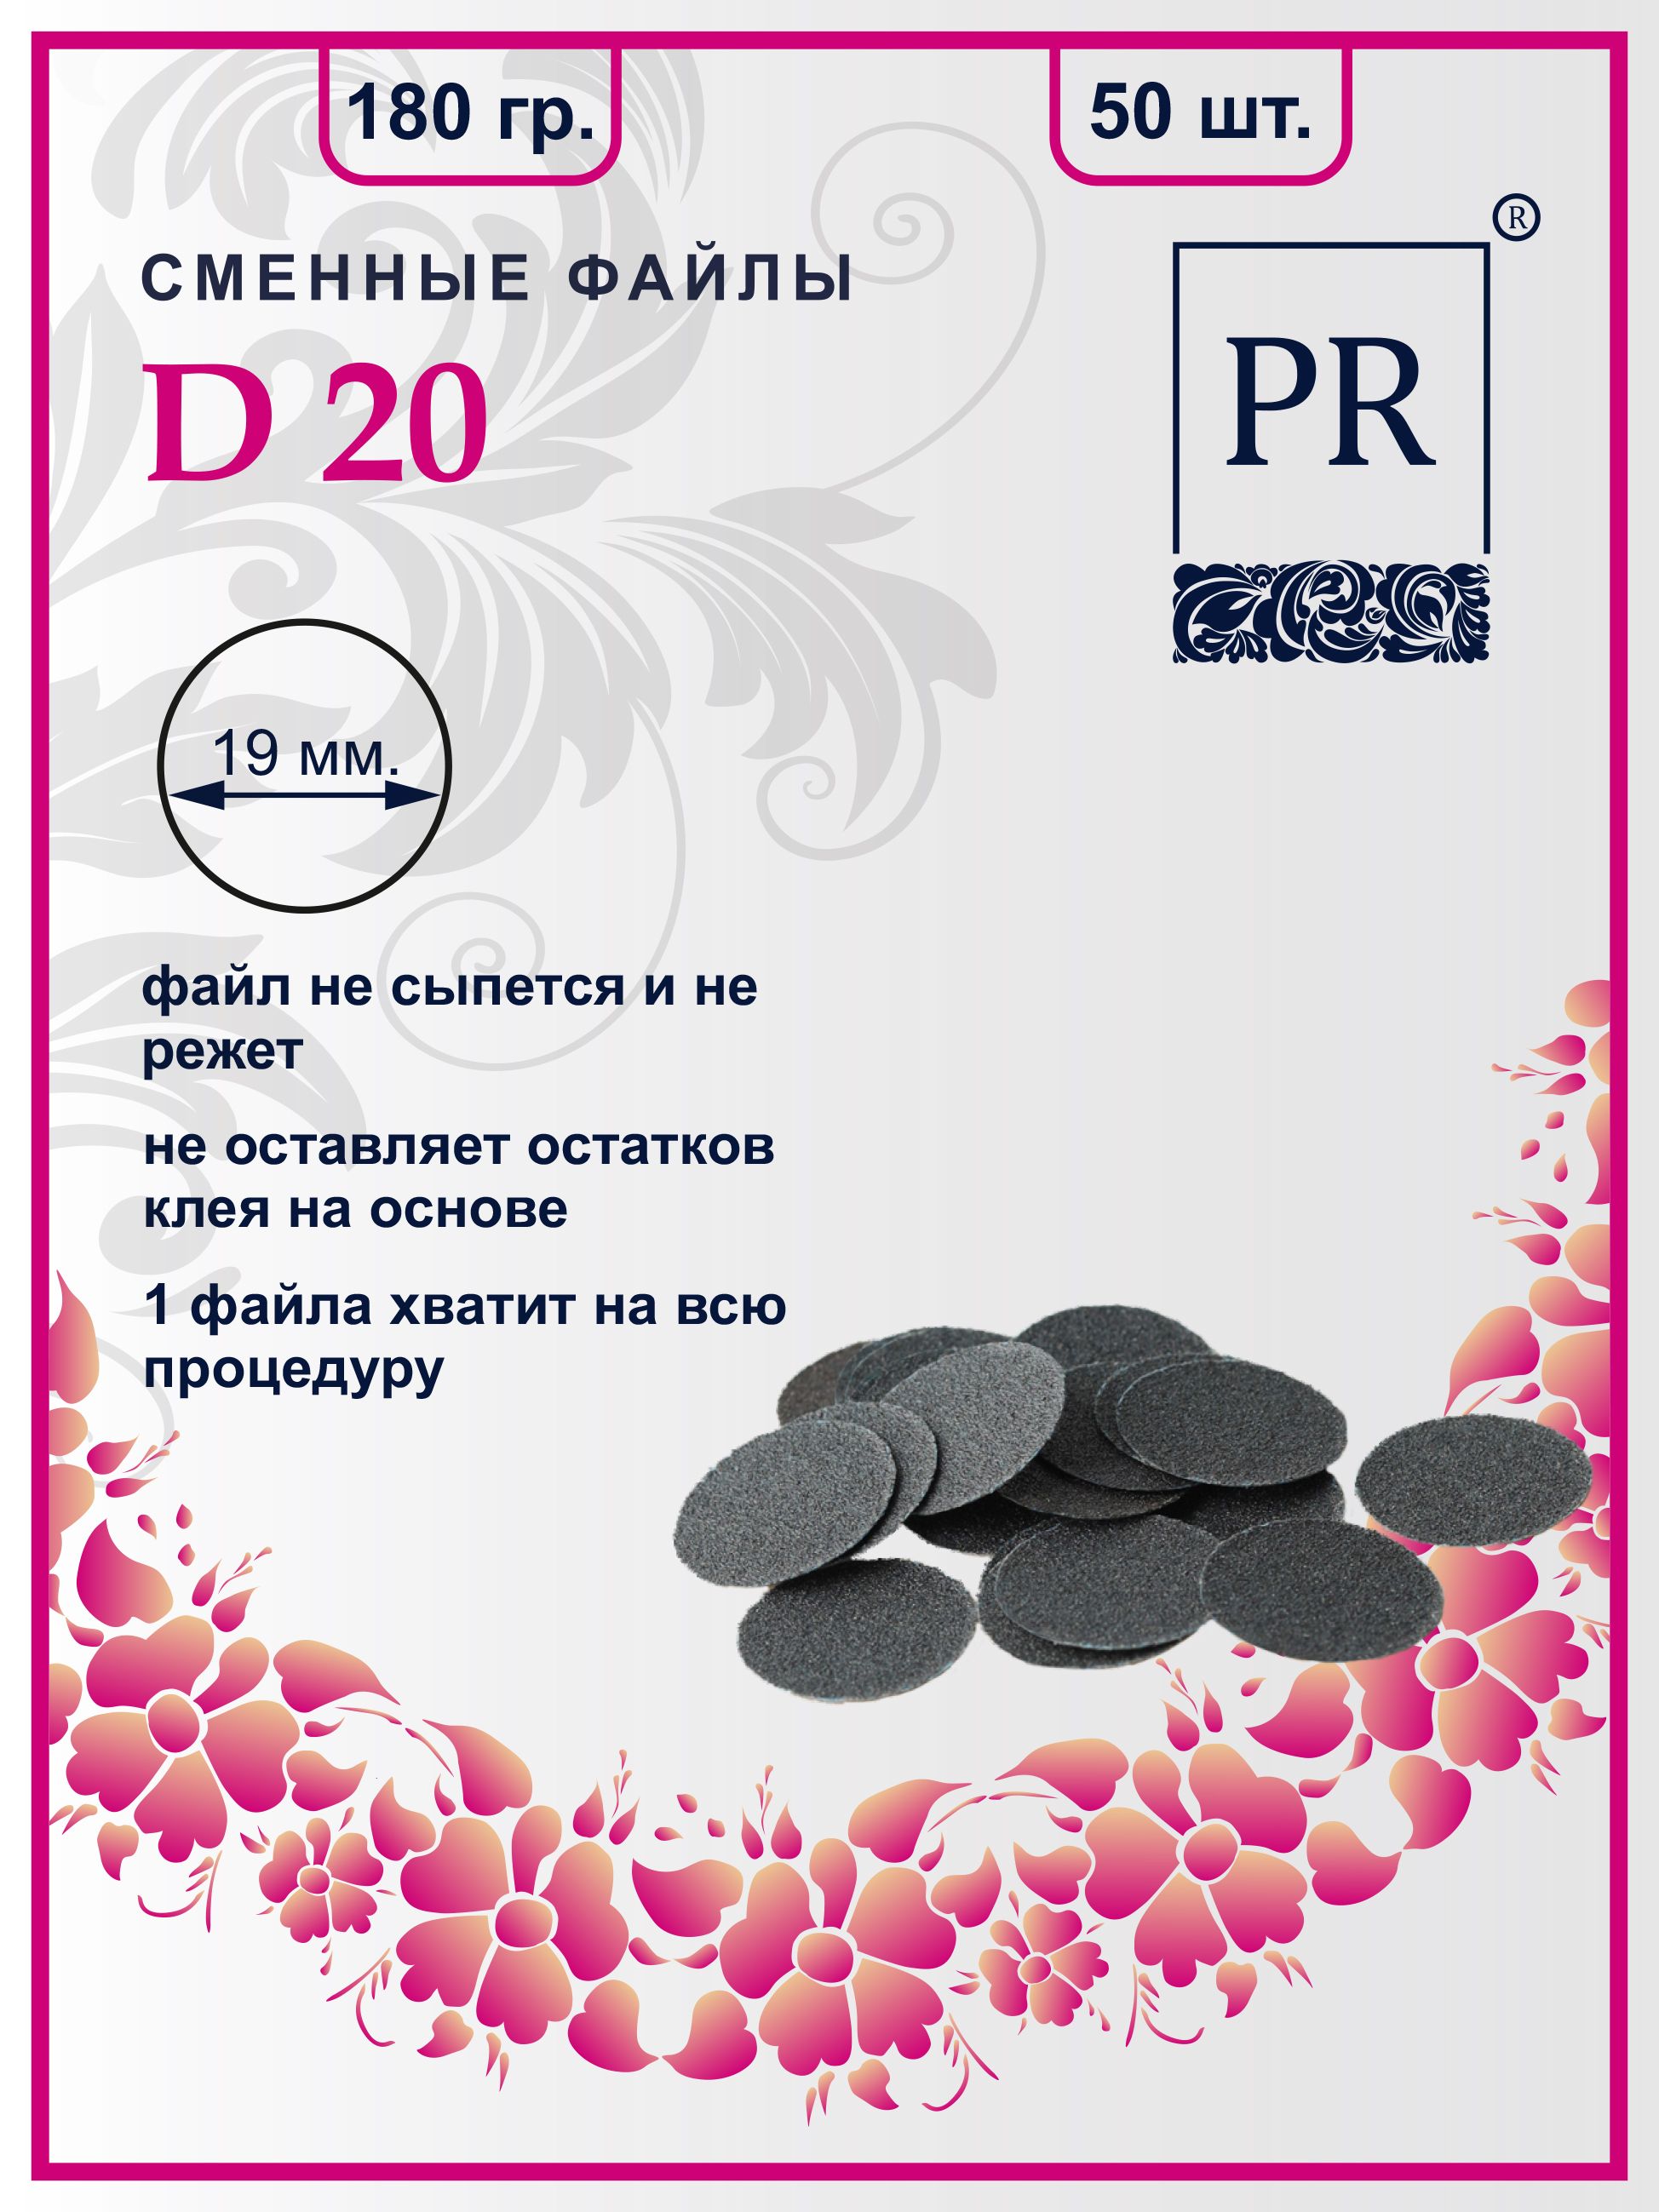 Сменные файлы Pilochki Russia диски для педикюра для диска М 180 грит 50 штук сменные файлы pilochki russia диски для педикюра для диска м 240 грит 50 штук